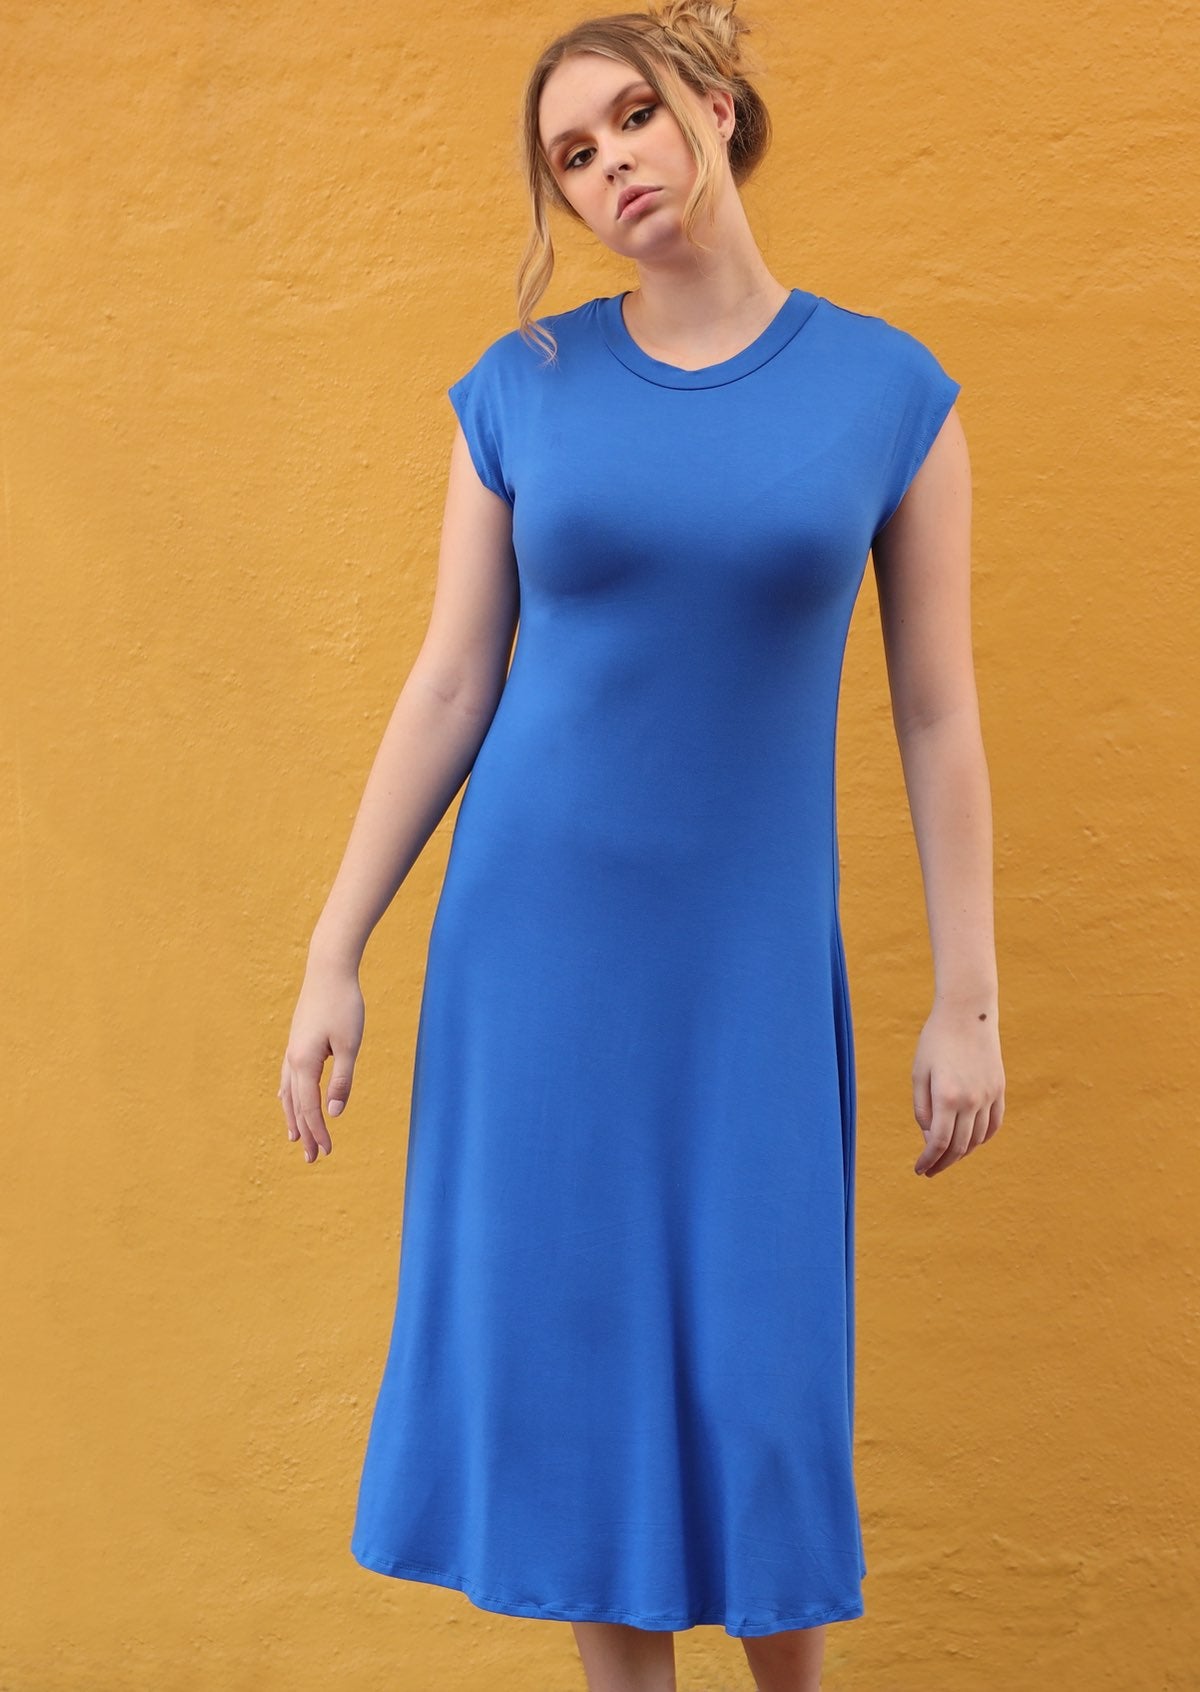 short sleeve blue dress